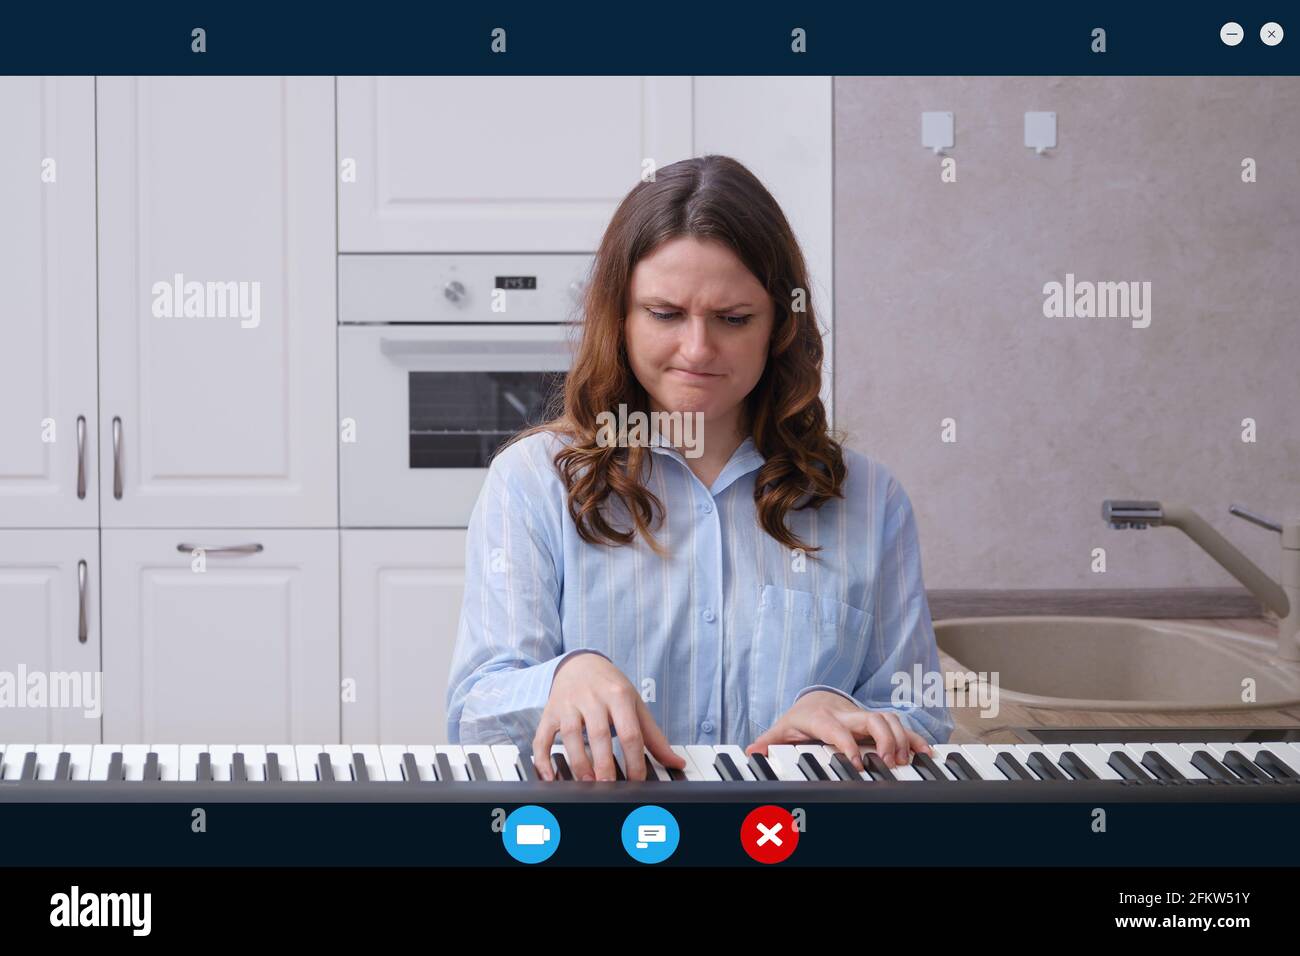 Angry Woman joue du piano tout en étant assise dans une cuisine à la maison  dans un chat vidéo en ligne. Écran avec interface de chat et d'appel vidéo  Photo Stock -